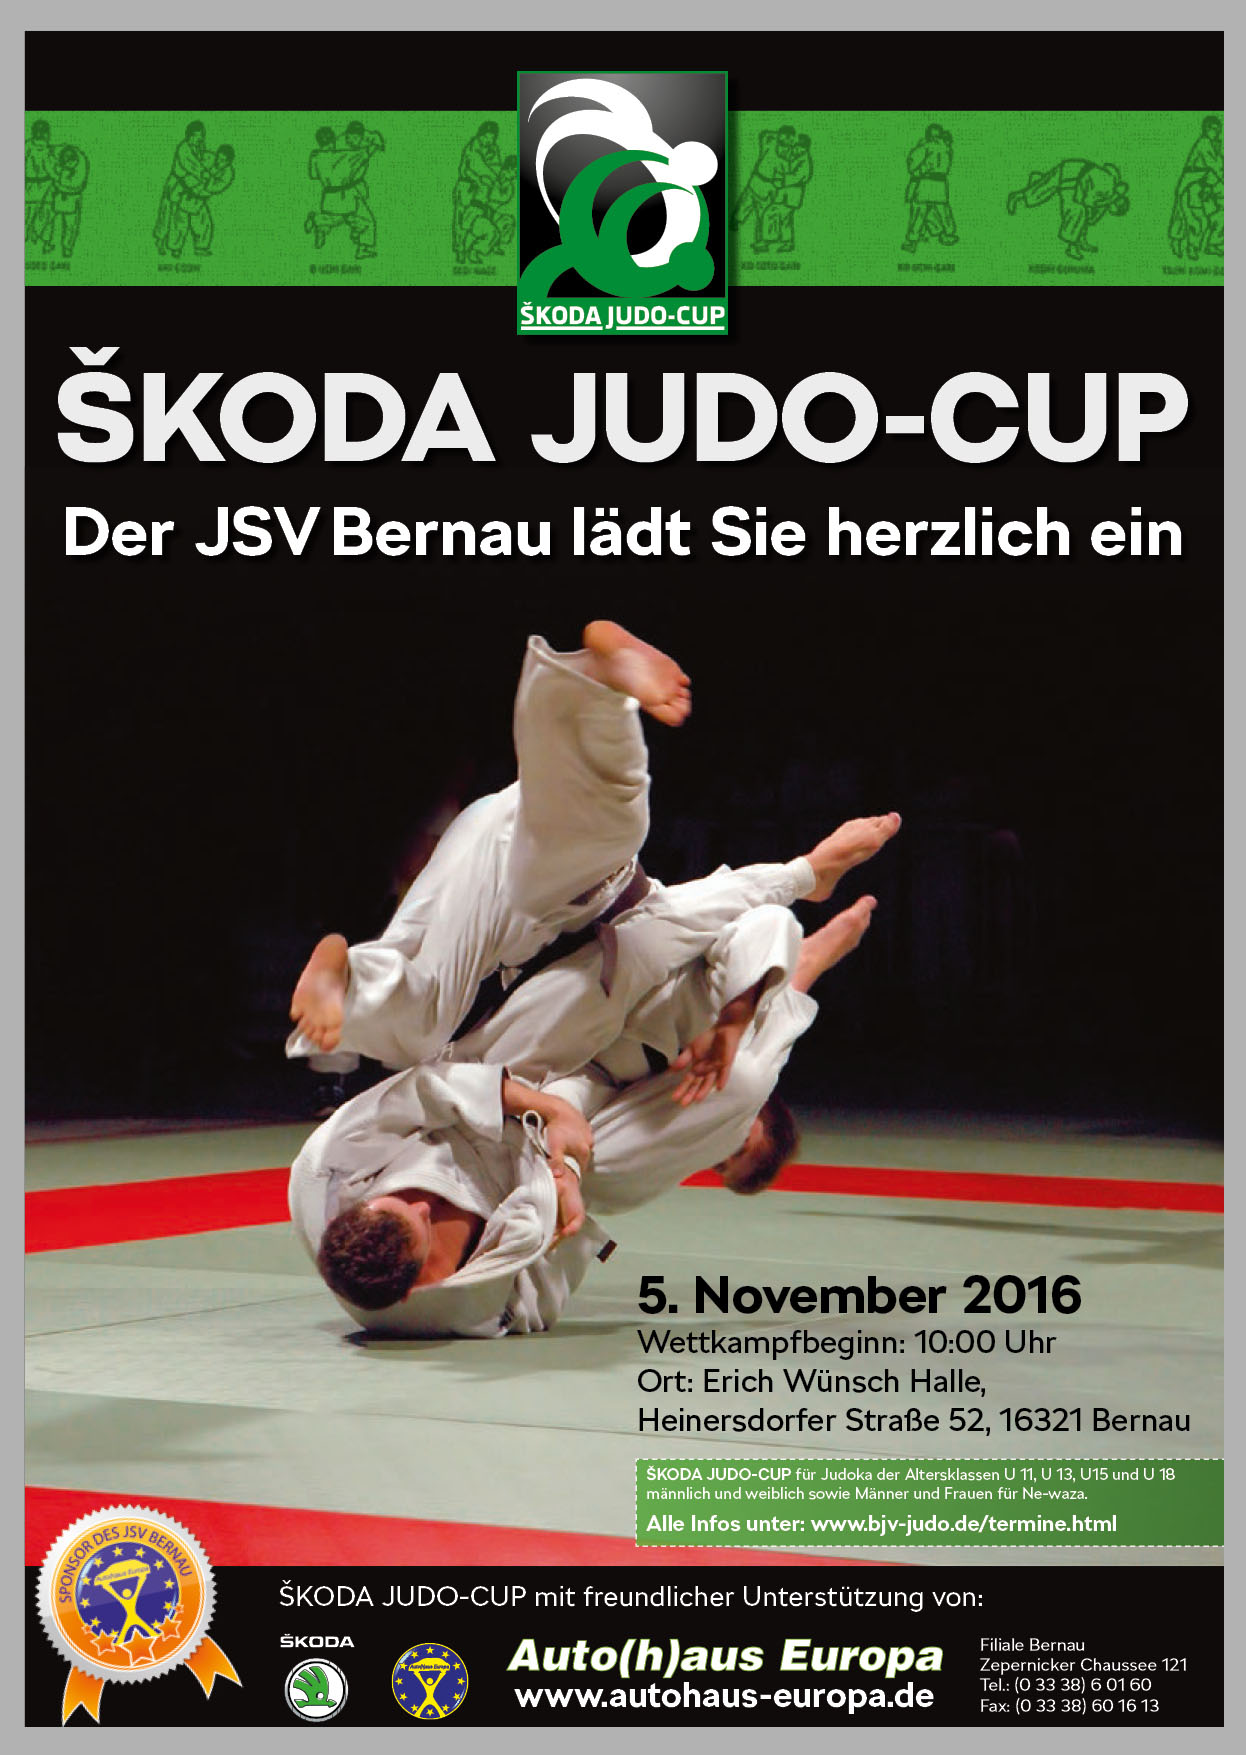 Printarbeiten Plakat Judo-Cup inkl. Logoentwicklung